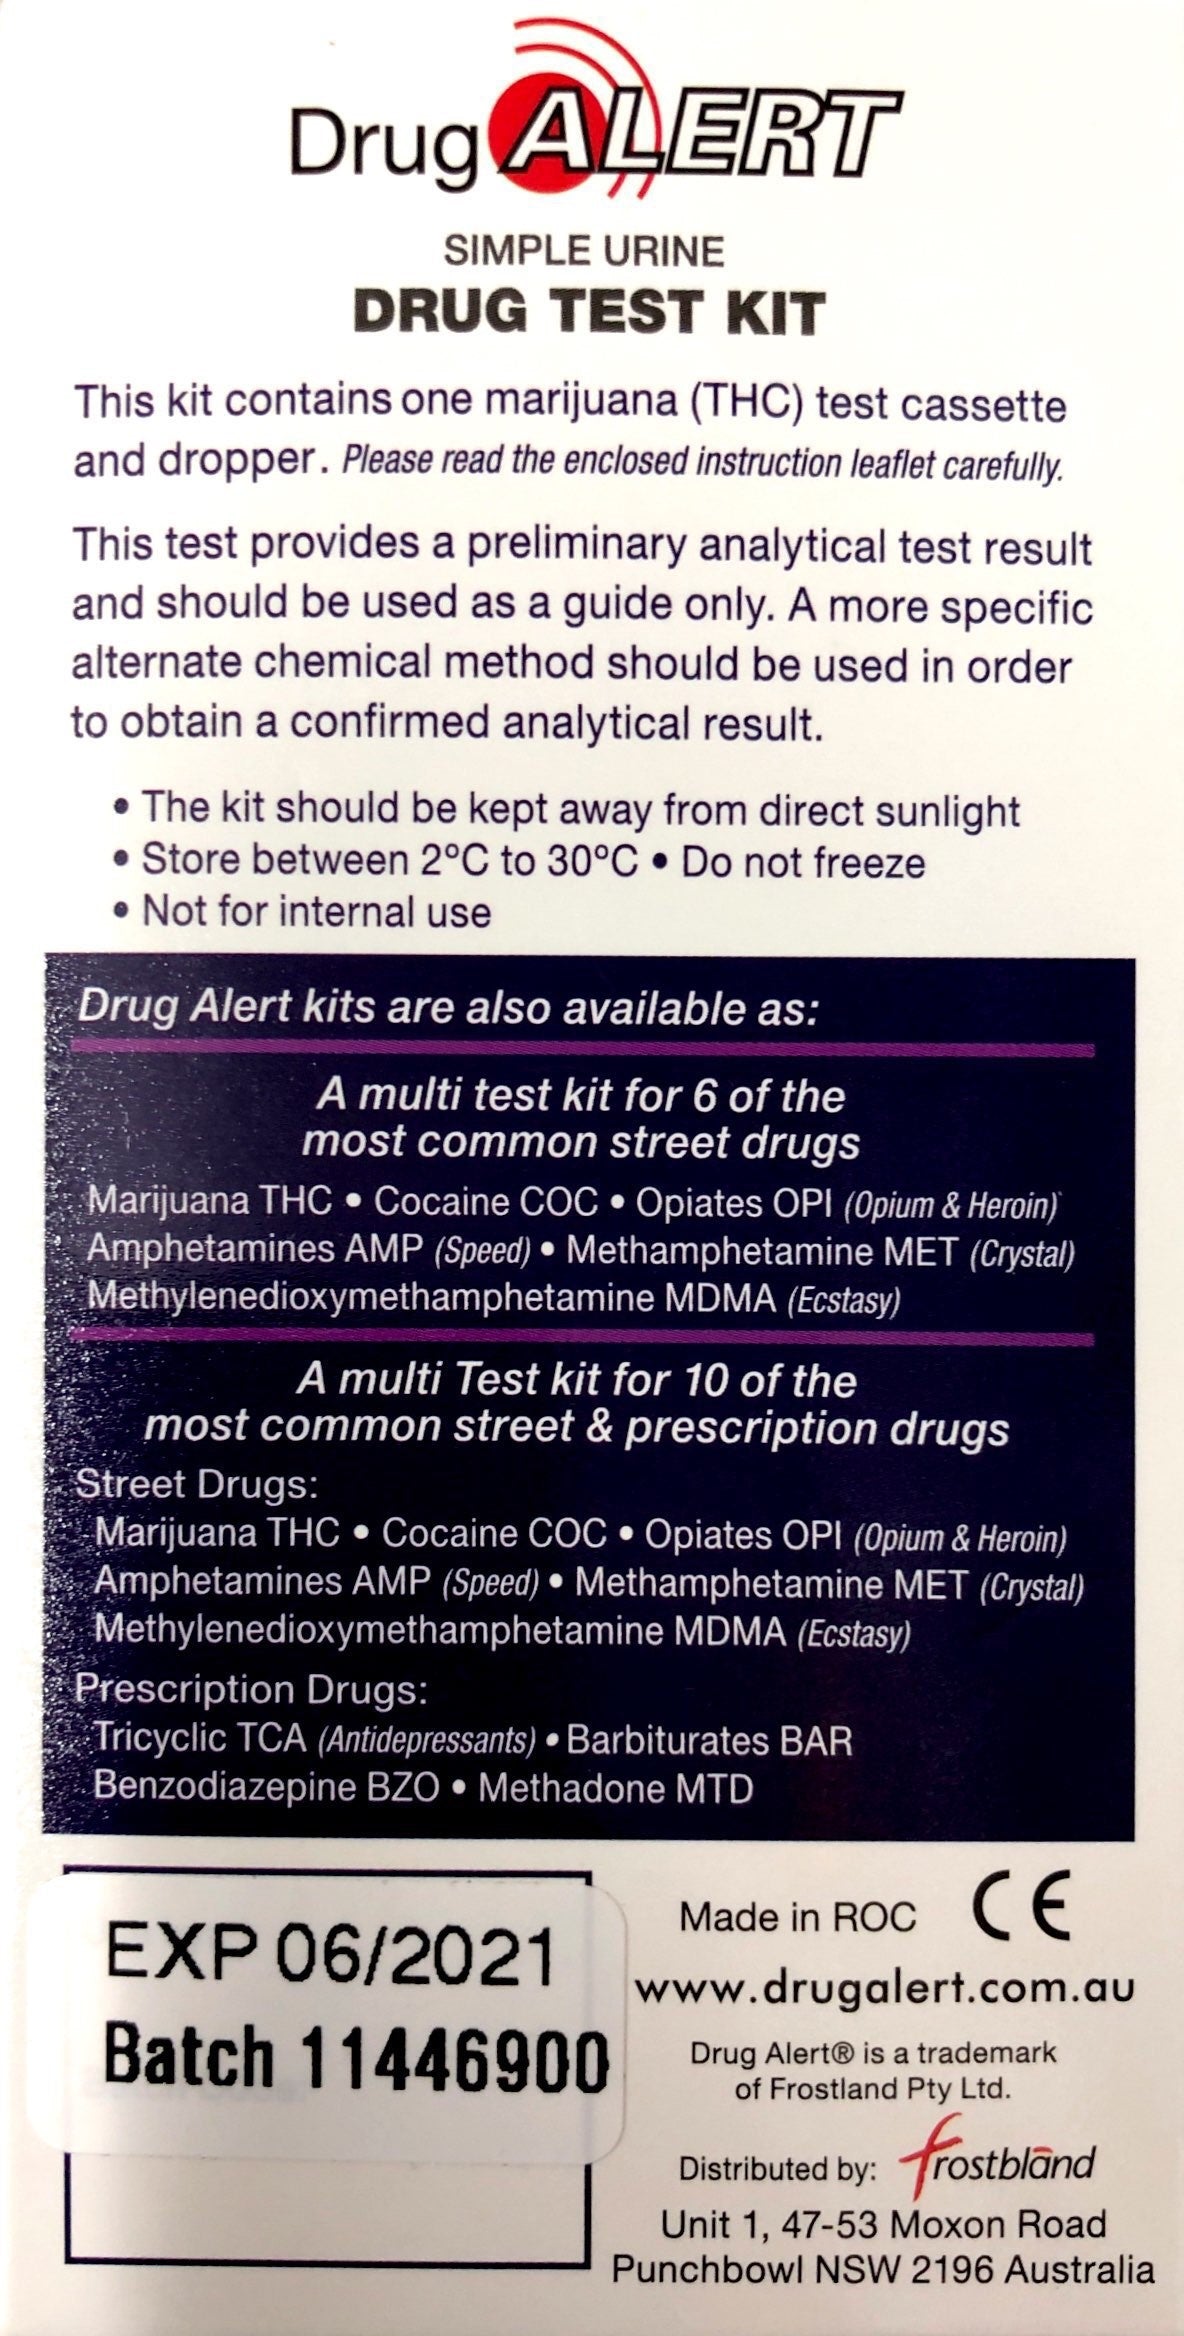 Drug Alert Urine 1 Test kit for Marijuana THC Tetrahydrocannabinol - Pakuranga Pharmacy